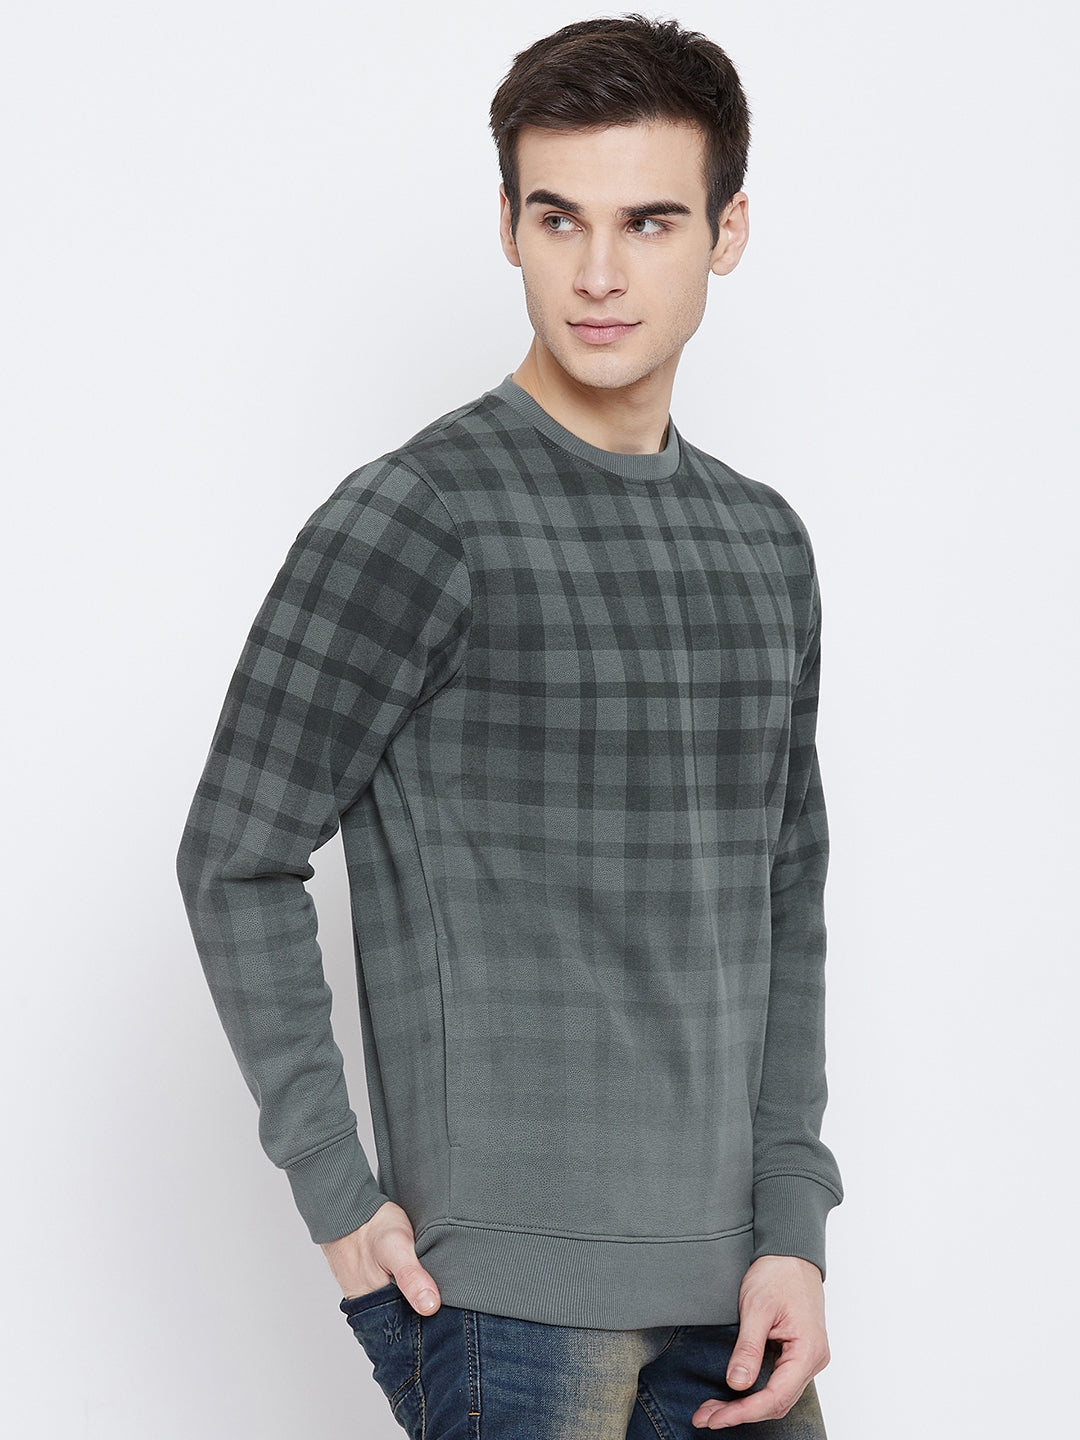 Green Checked Round Neck Sweatshirt - Men Sweatshirts